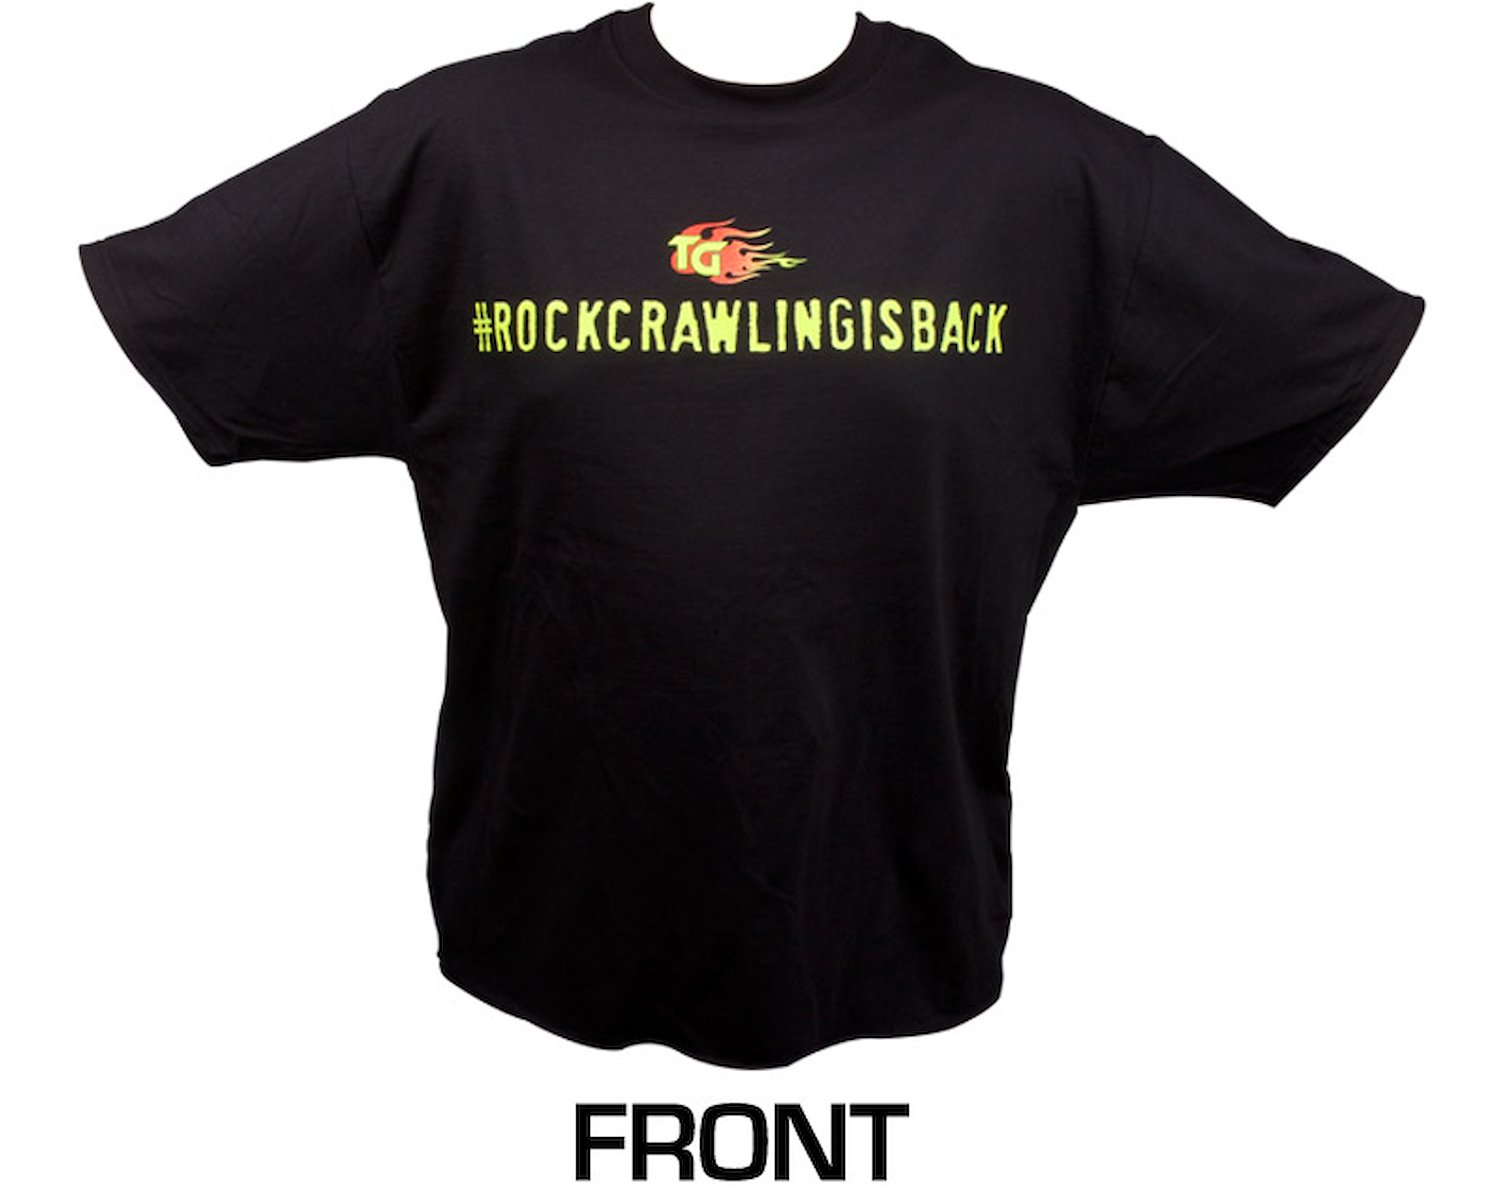 Short Sleeved Black Shirt #rockcrawlingisback XX-Large